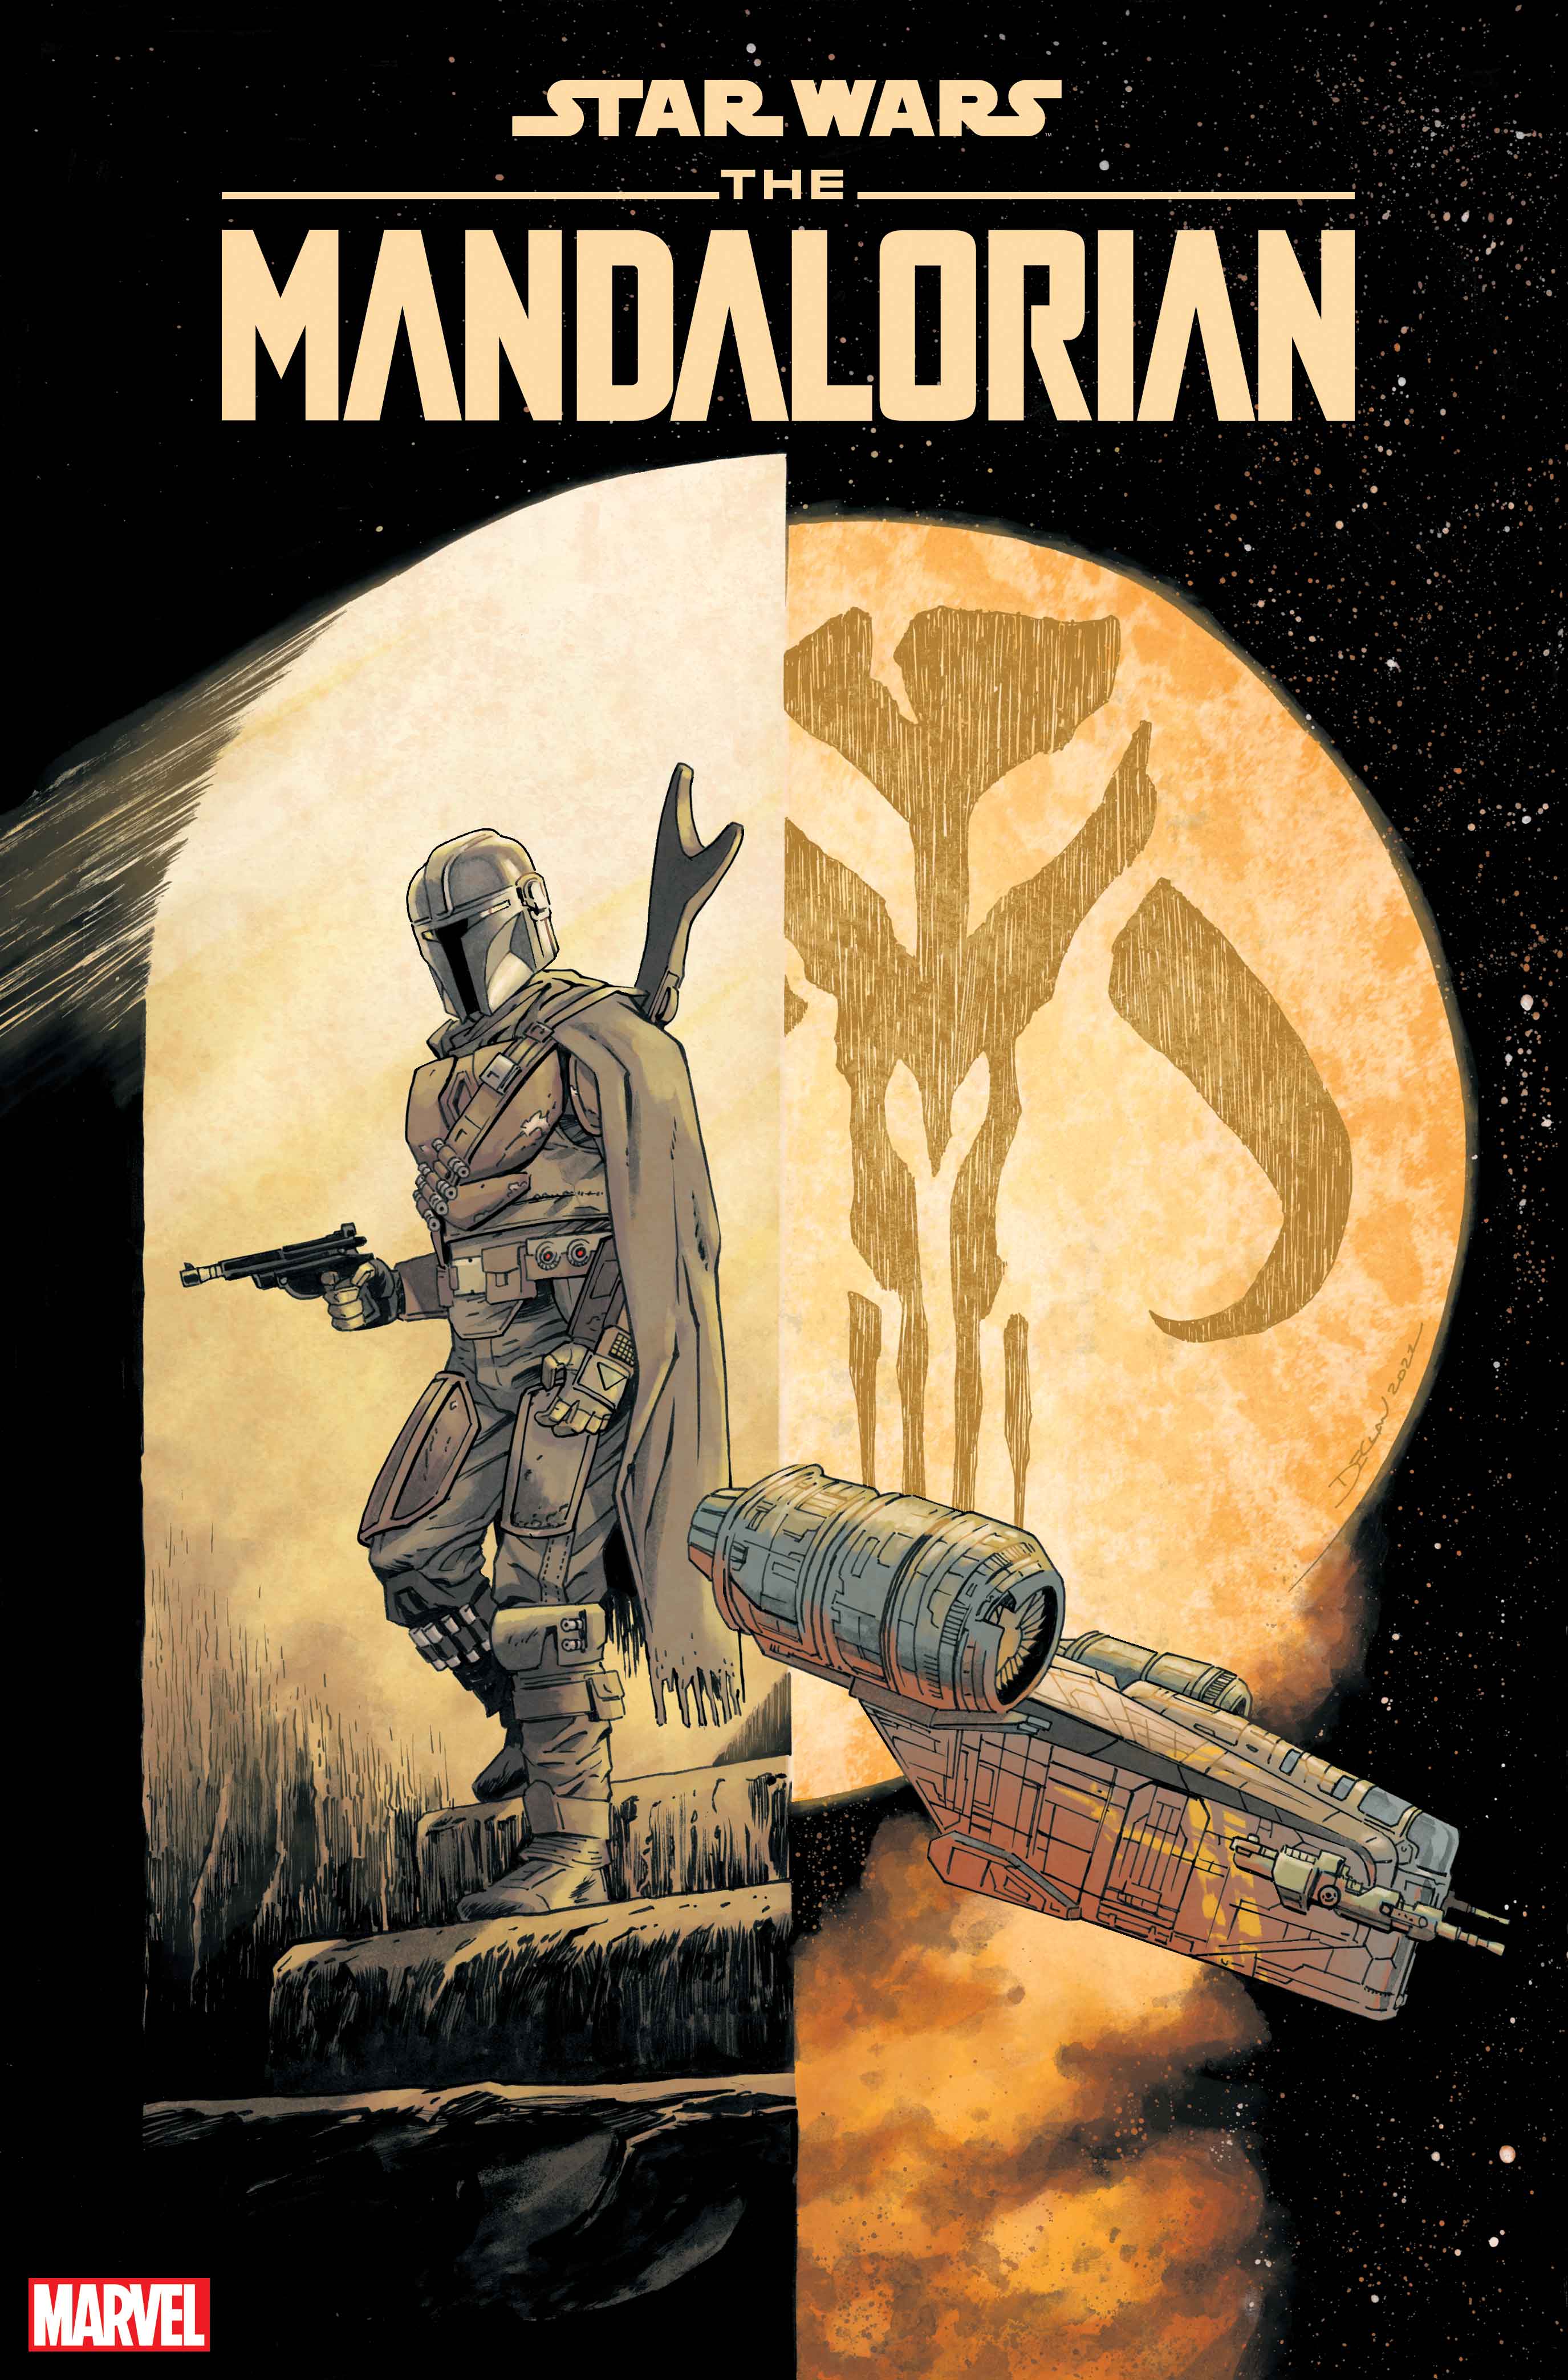 Couverture de la variante Star Wars: The Mandalorian # 1 par Declan Shalvey